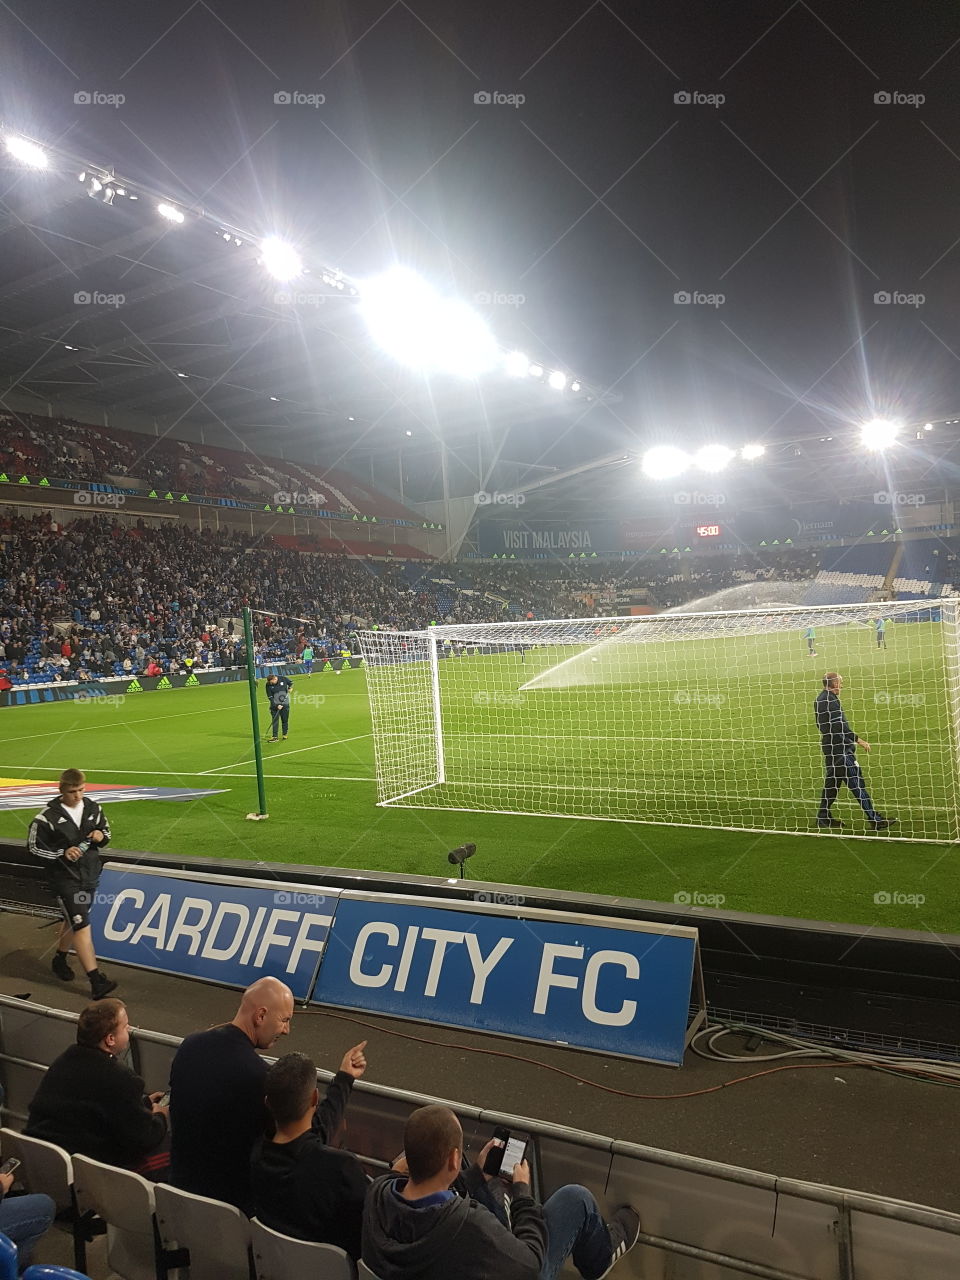 Cardiff City V Leeds United, Cardiff, Wales